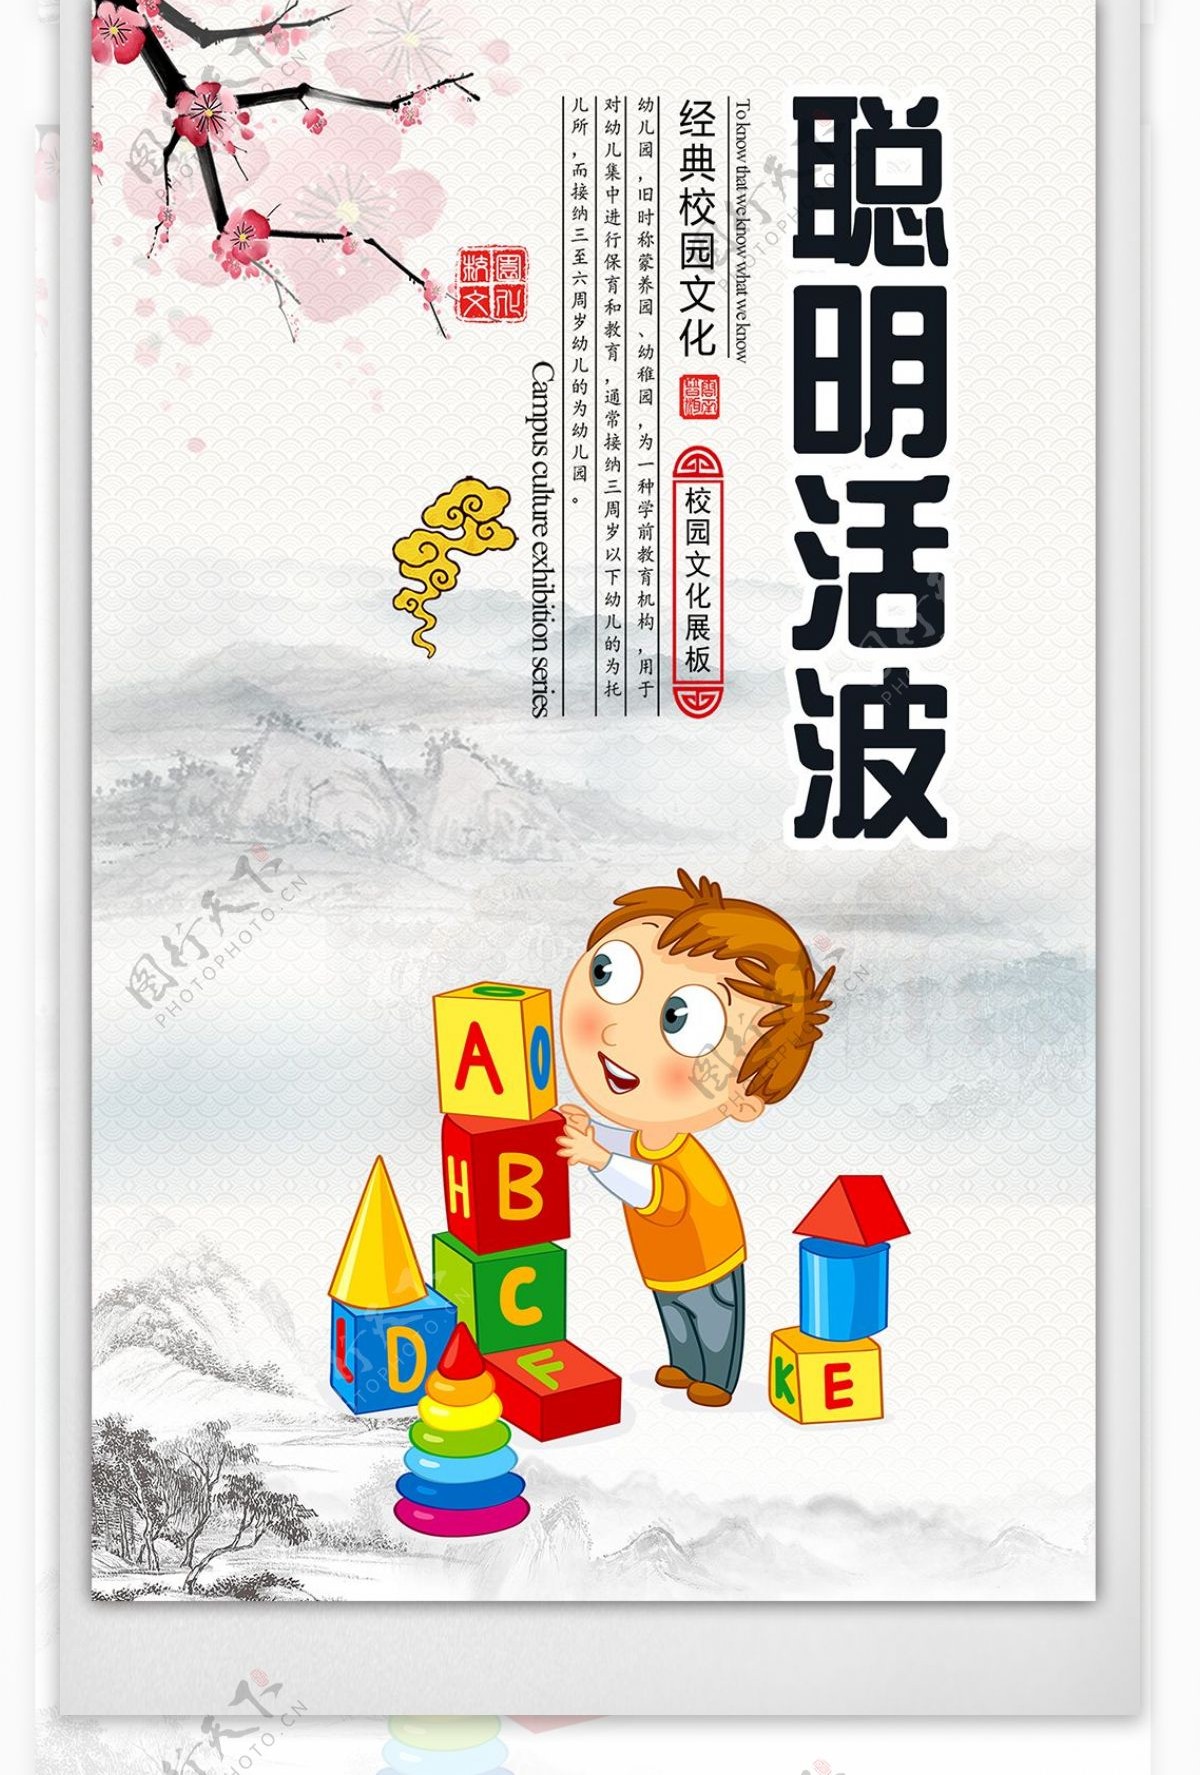 中国风校园文化卡通挂画设计素材图